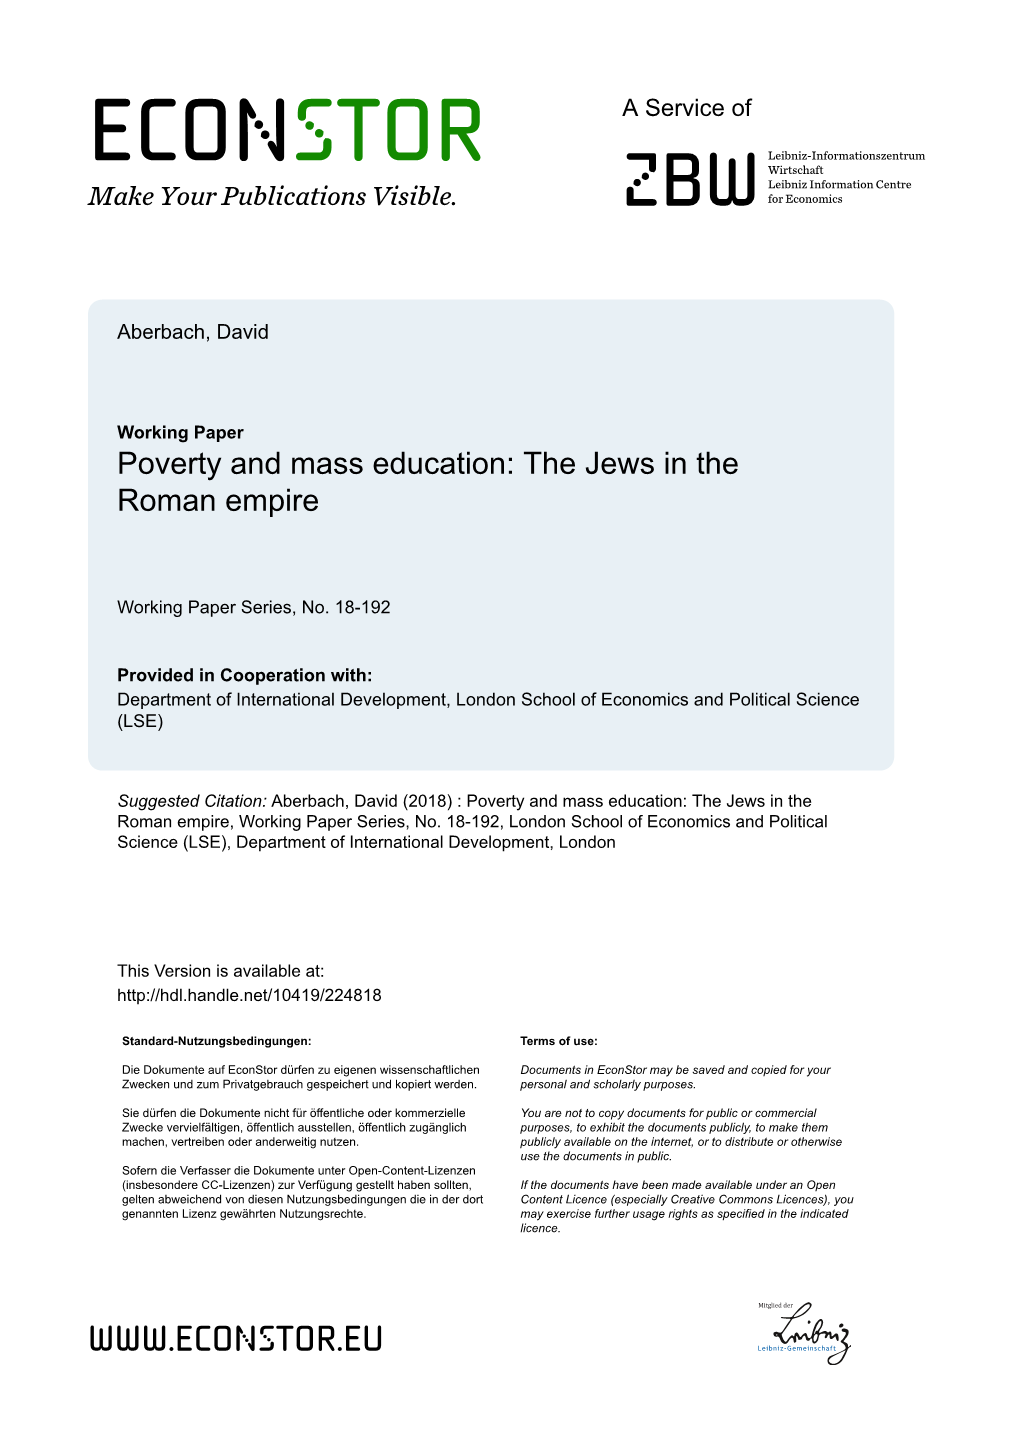 The Jews in the Roman Empire